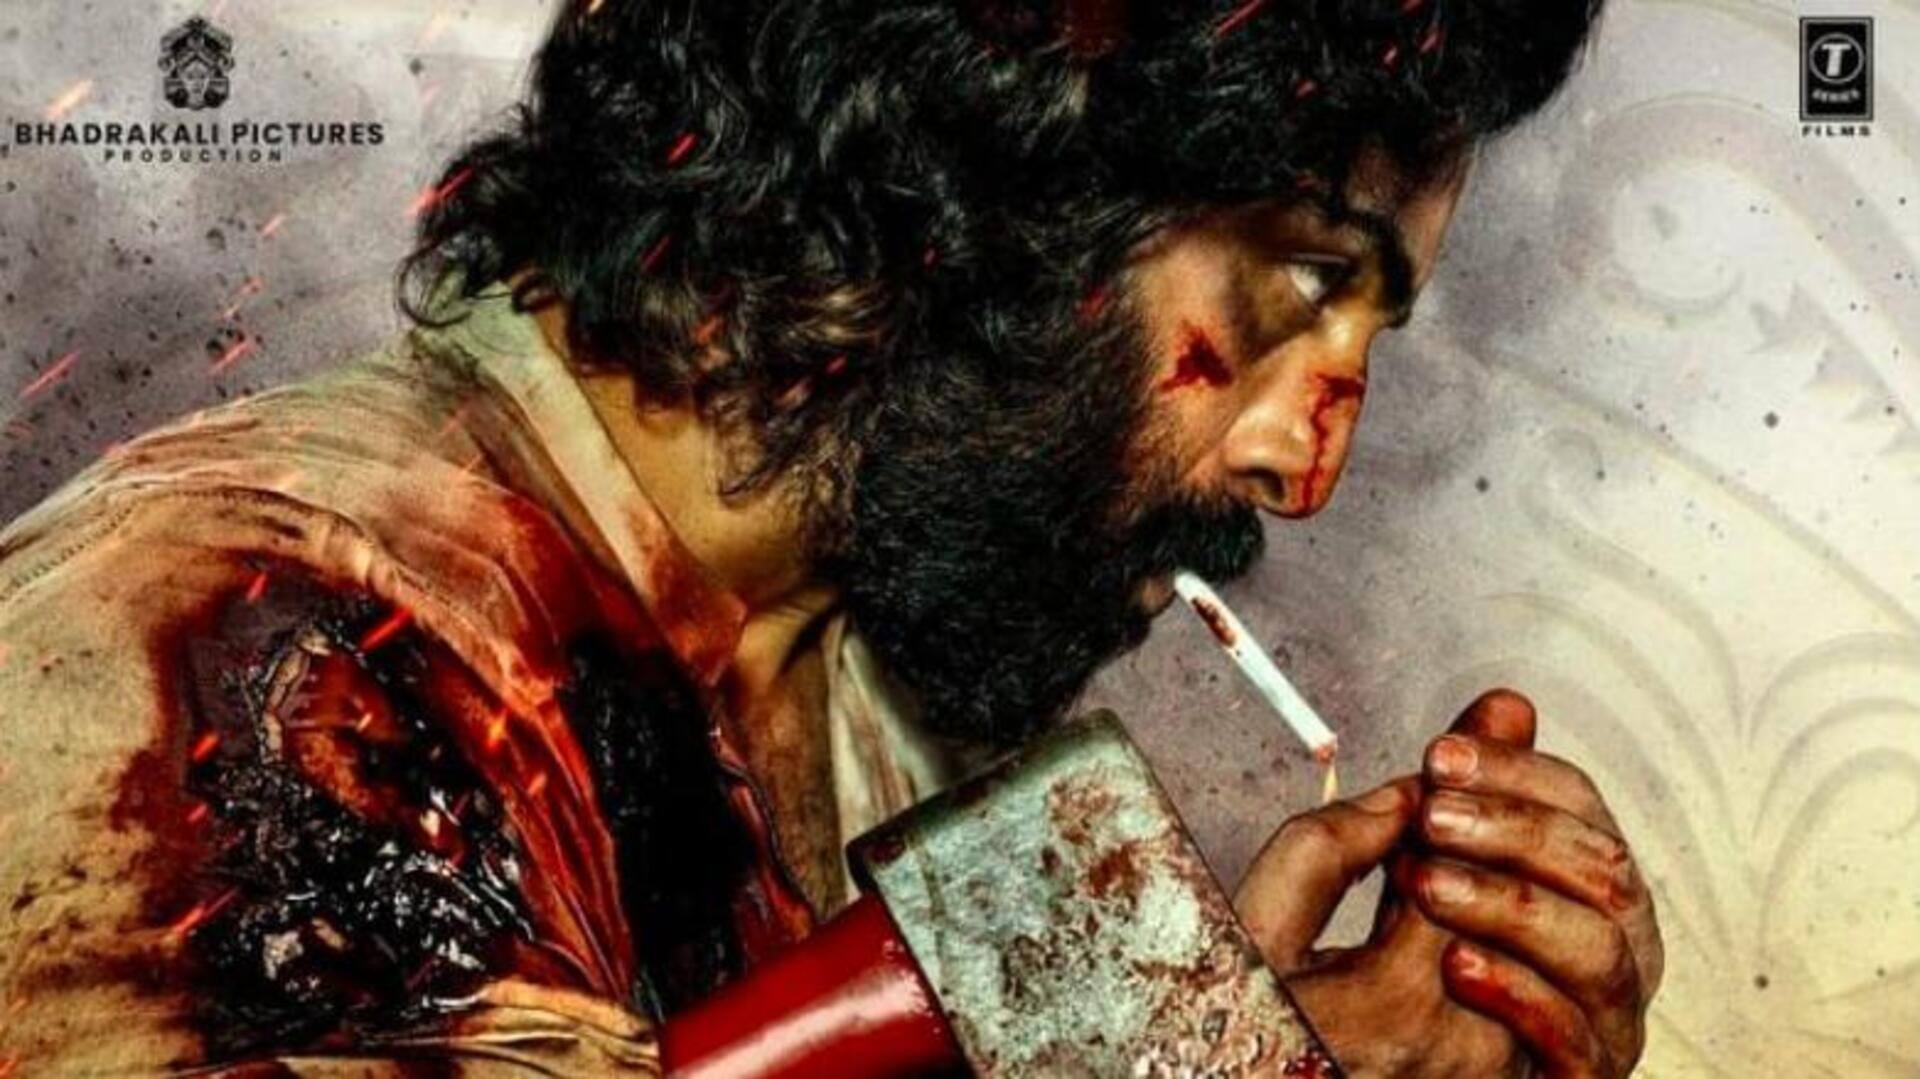 रणबीर कपूर की 'एनिमल' तय तारीख पर होगी रिलीज, इन फिल्मों से होगी टक्कर 